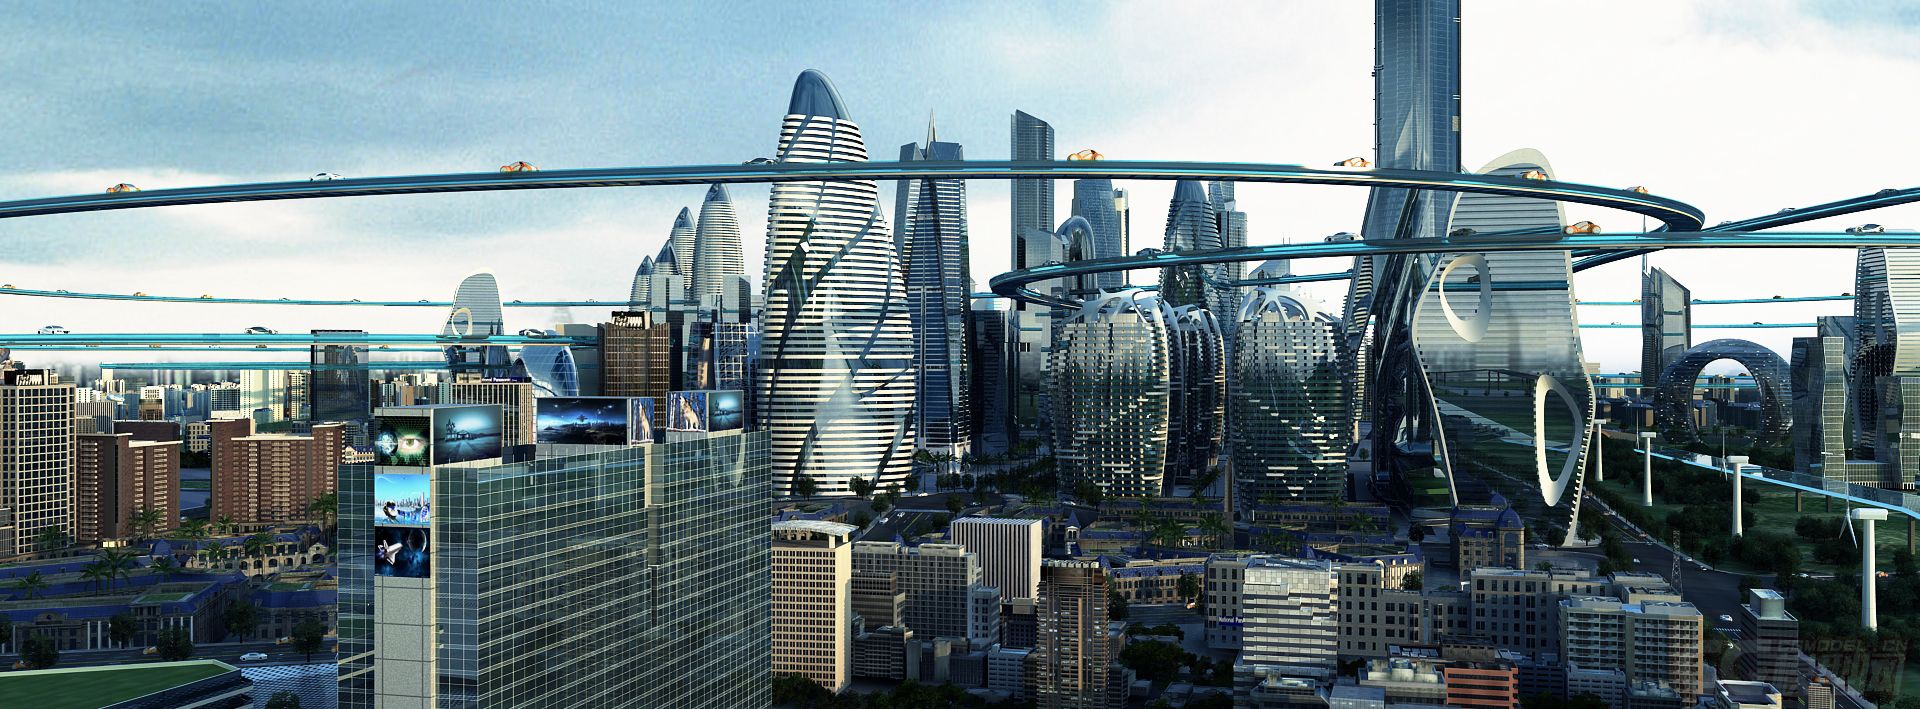 未来科幻城市悬浮轨道大楼特写